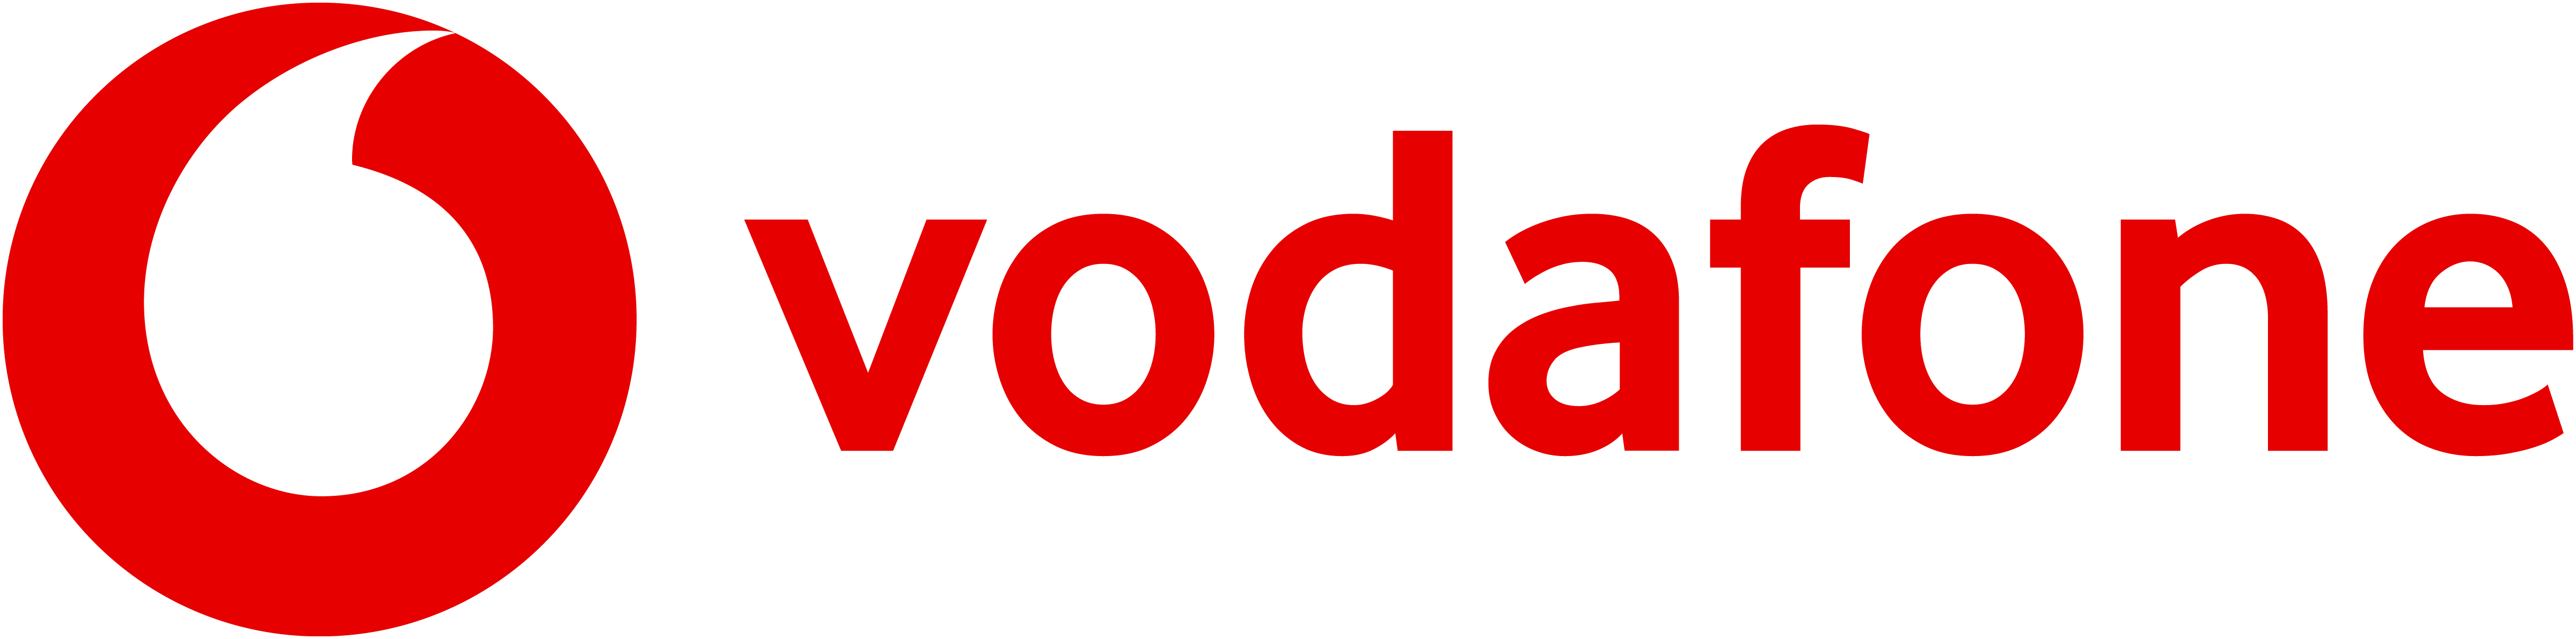 Vodafone Italia S.p.A.